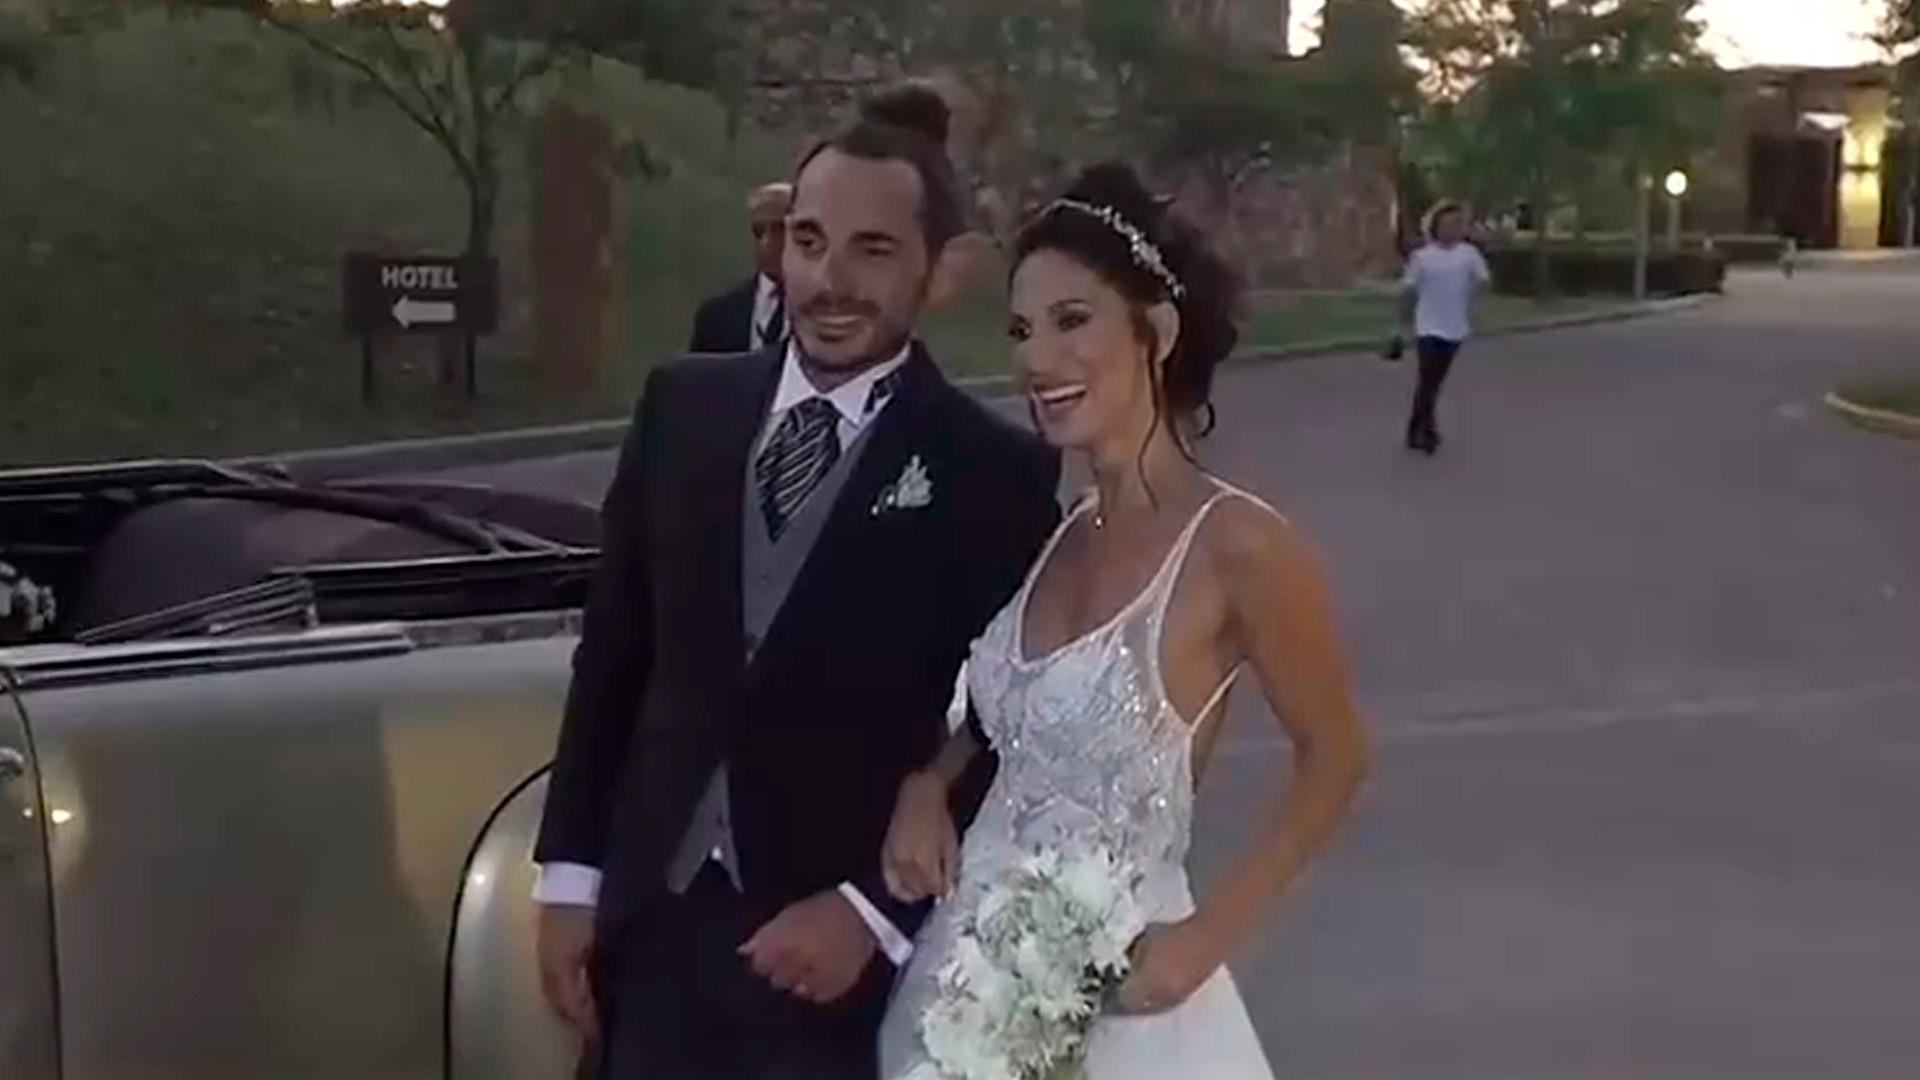 La boda de Silvina Escudero con Federico: un traje de novia reciclado, los  ausentes a la fiesta y la intimidad por dentro - Infobae